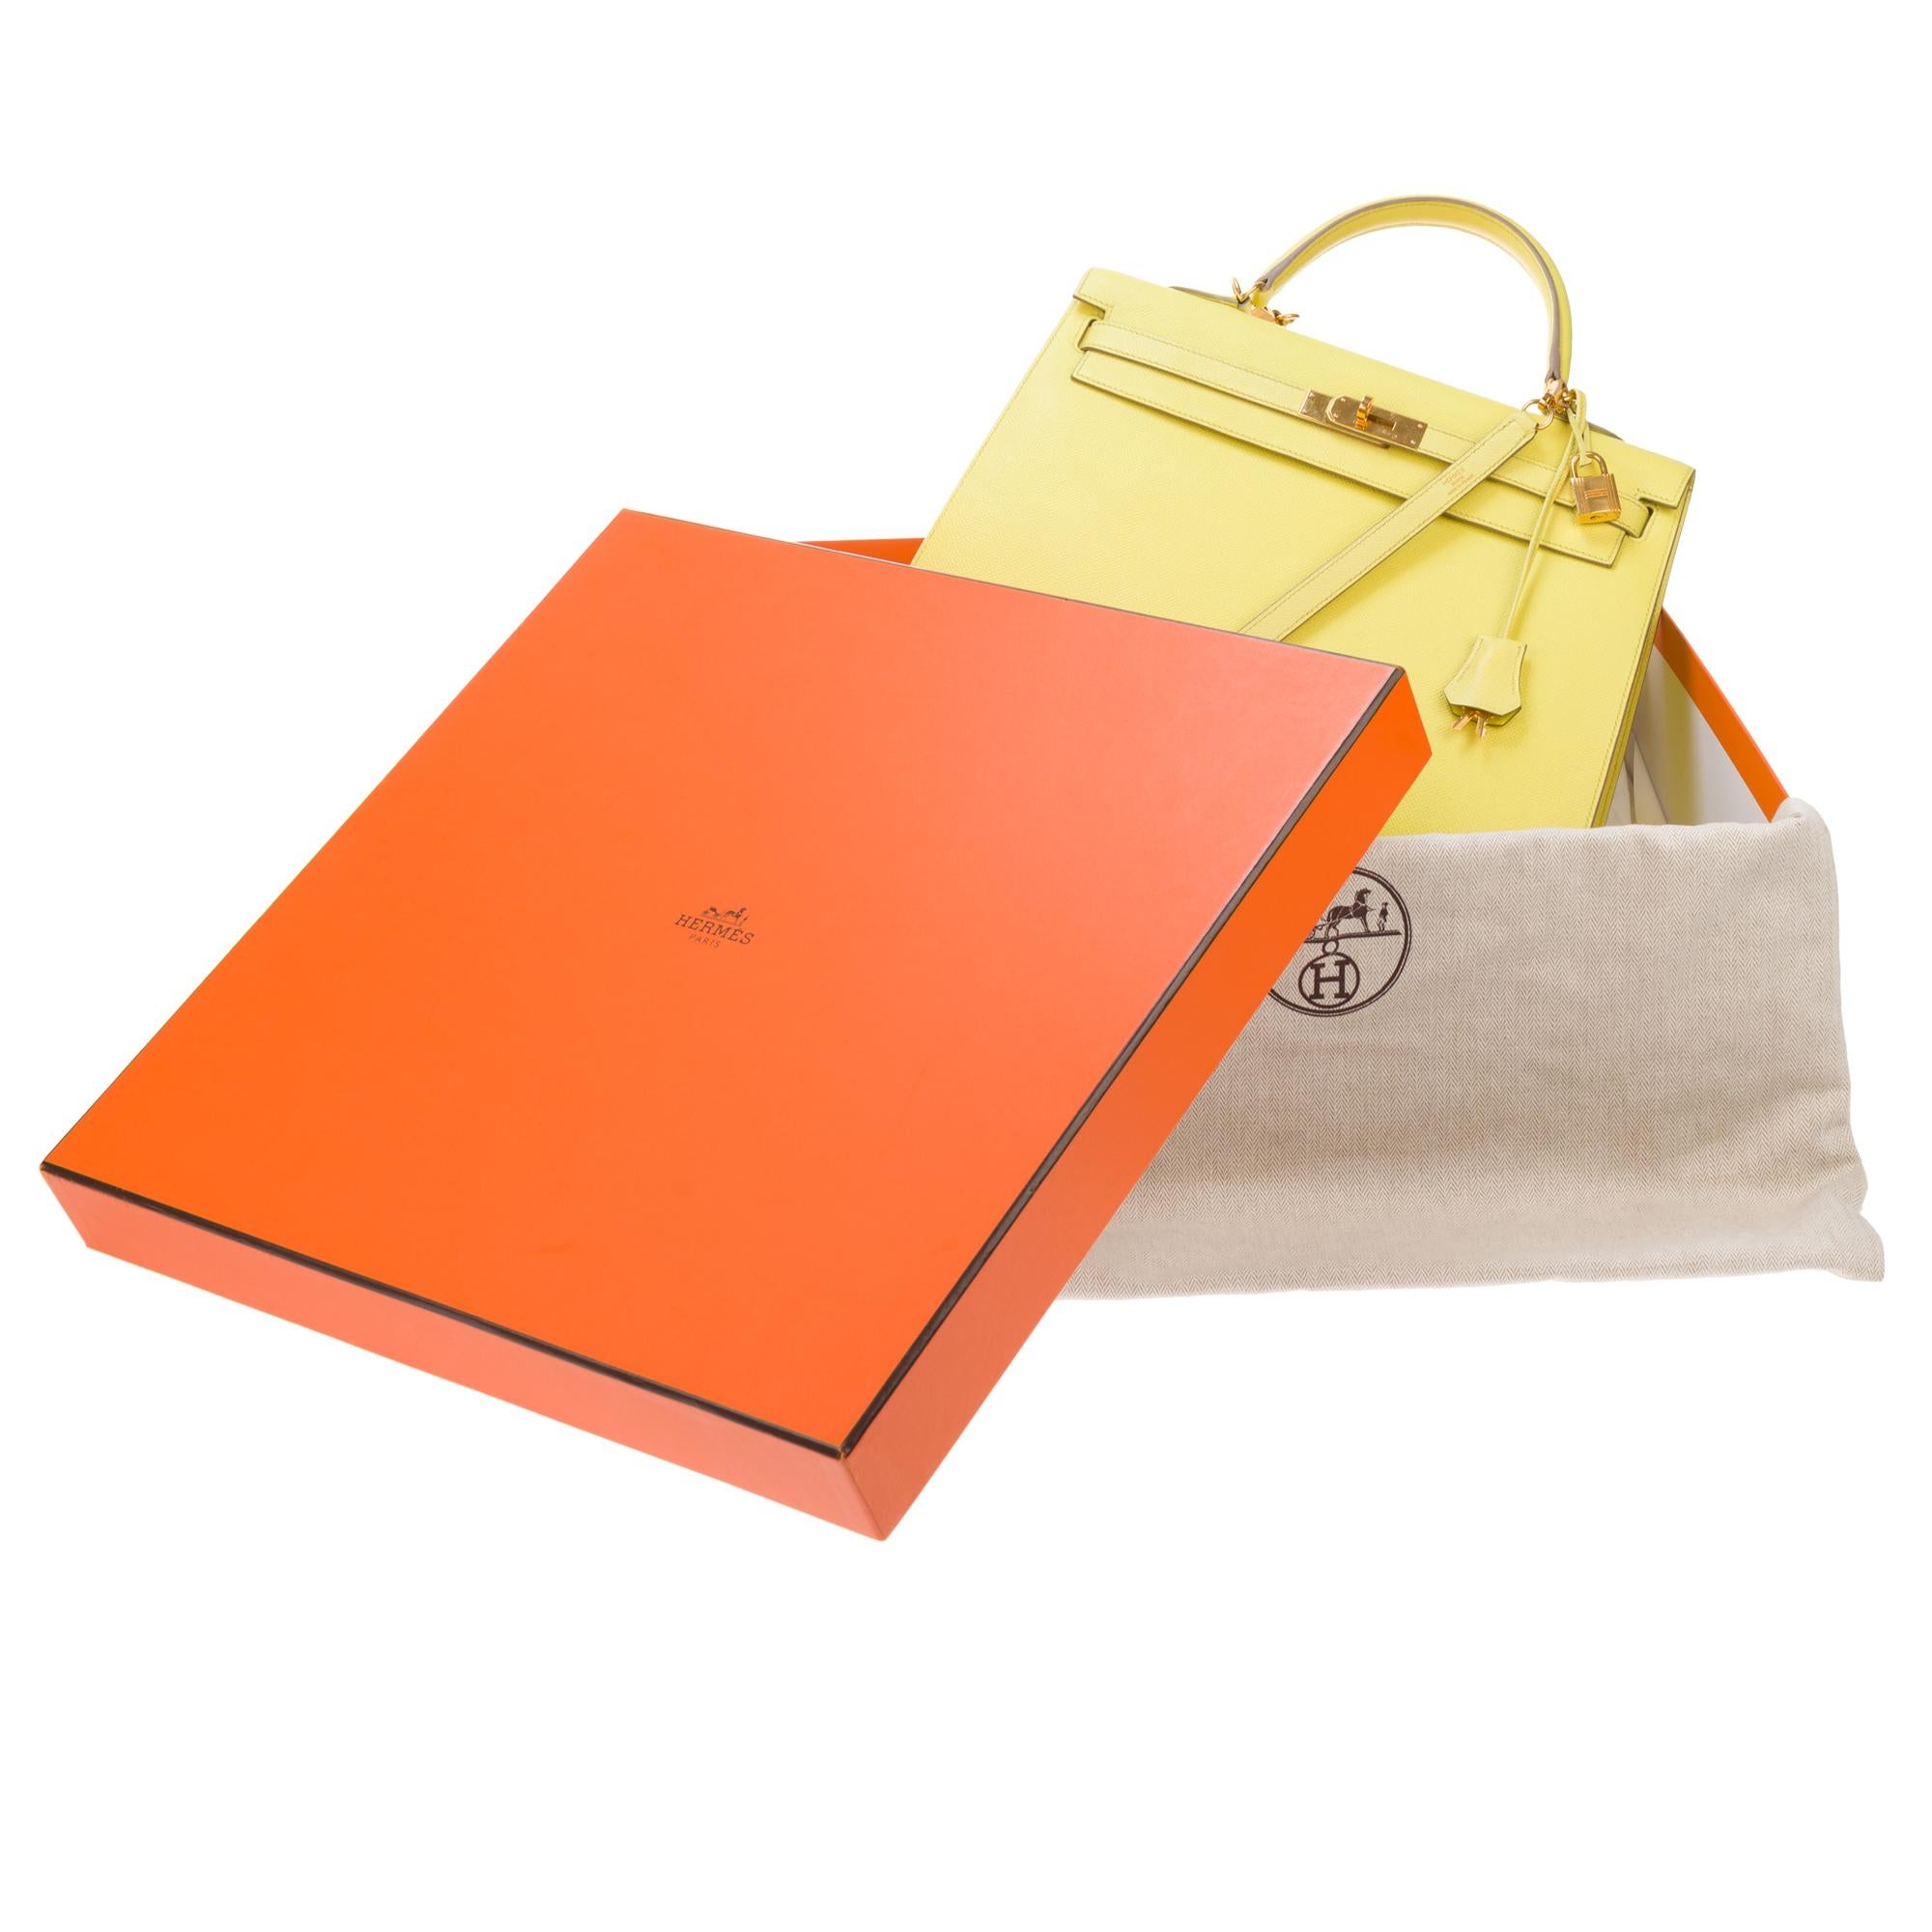 Erstaunlich Hermès Kelly 35 Handtasche mit Gurt in epsom gelb Zitrone Farbe, GHW ! 5